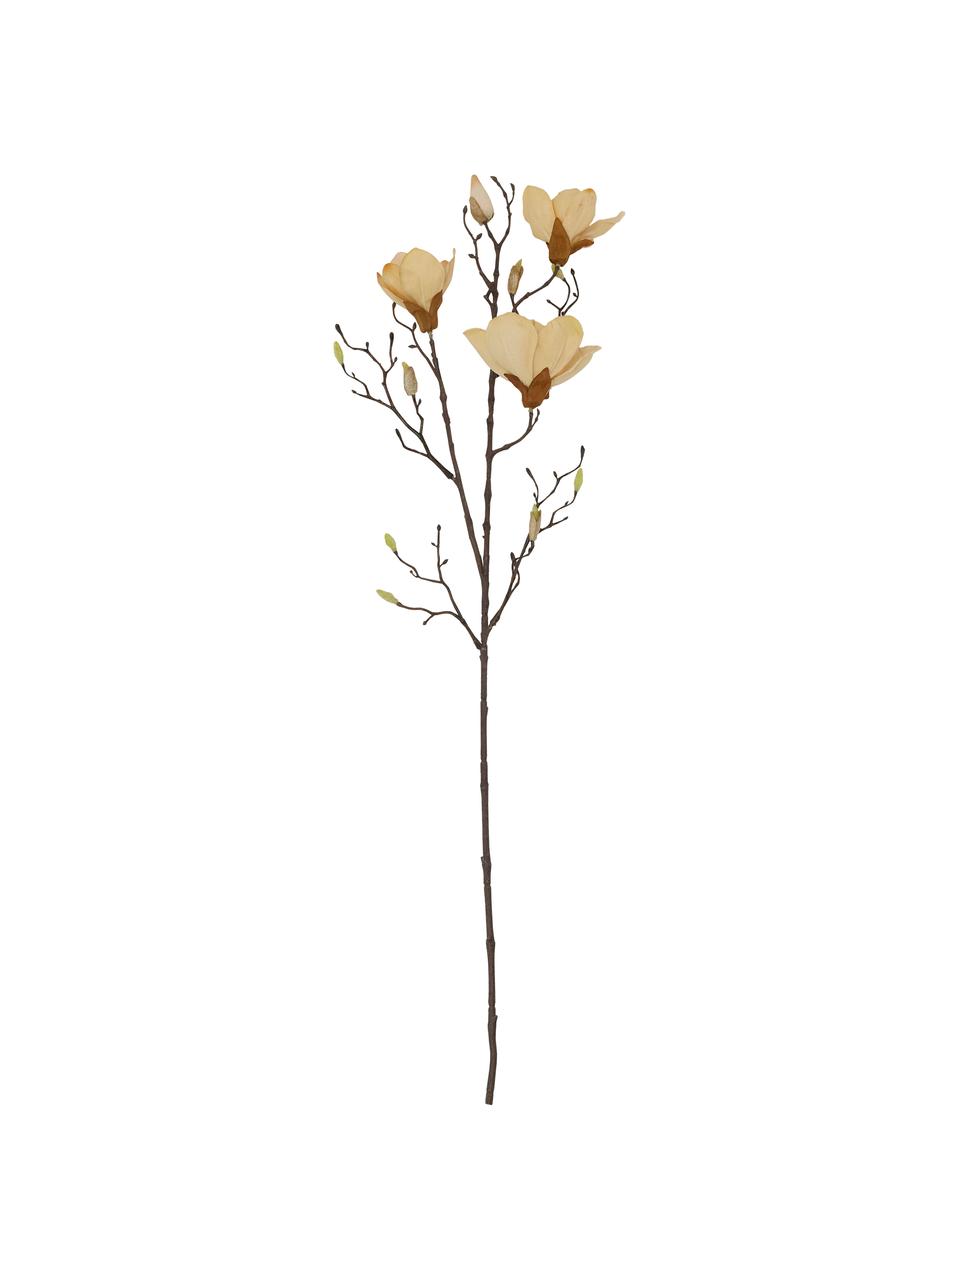 Kvetinová dekorácia Magnolia, Plast (PVC), oceľový drôt, Béžová, hnedá, D 85 cm